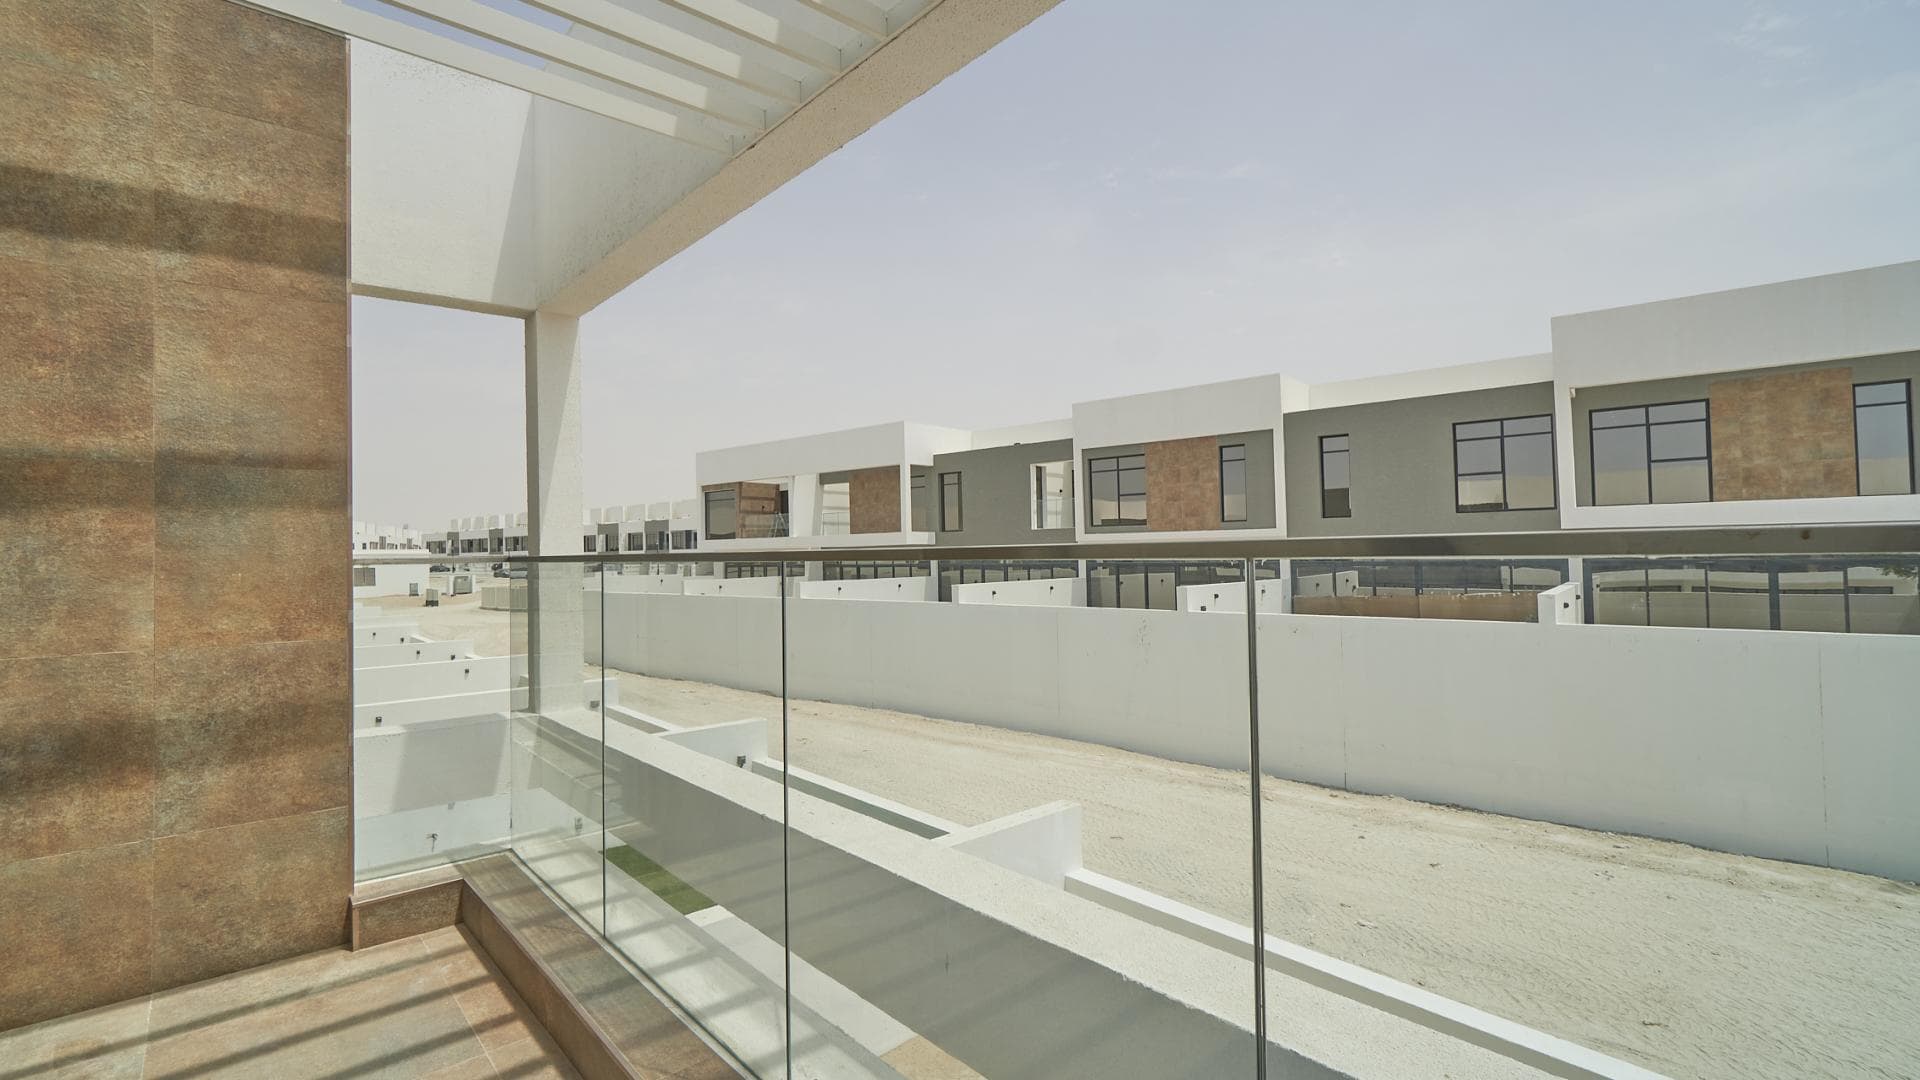 4 Bedroom Villa For Rent Jumeirah Luxury Lp17960 23d975828255f400.jpg